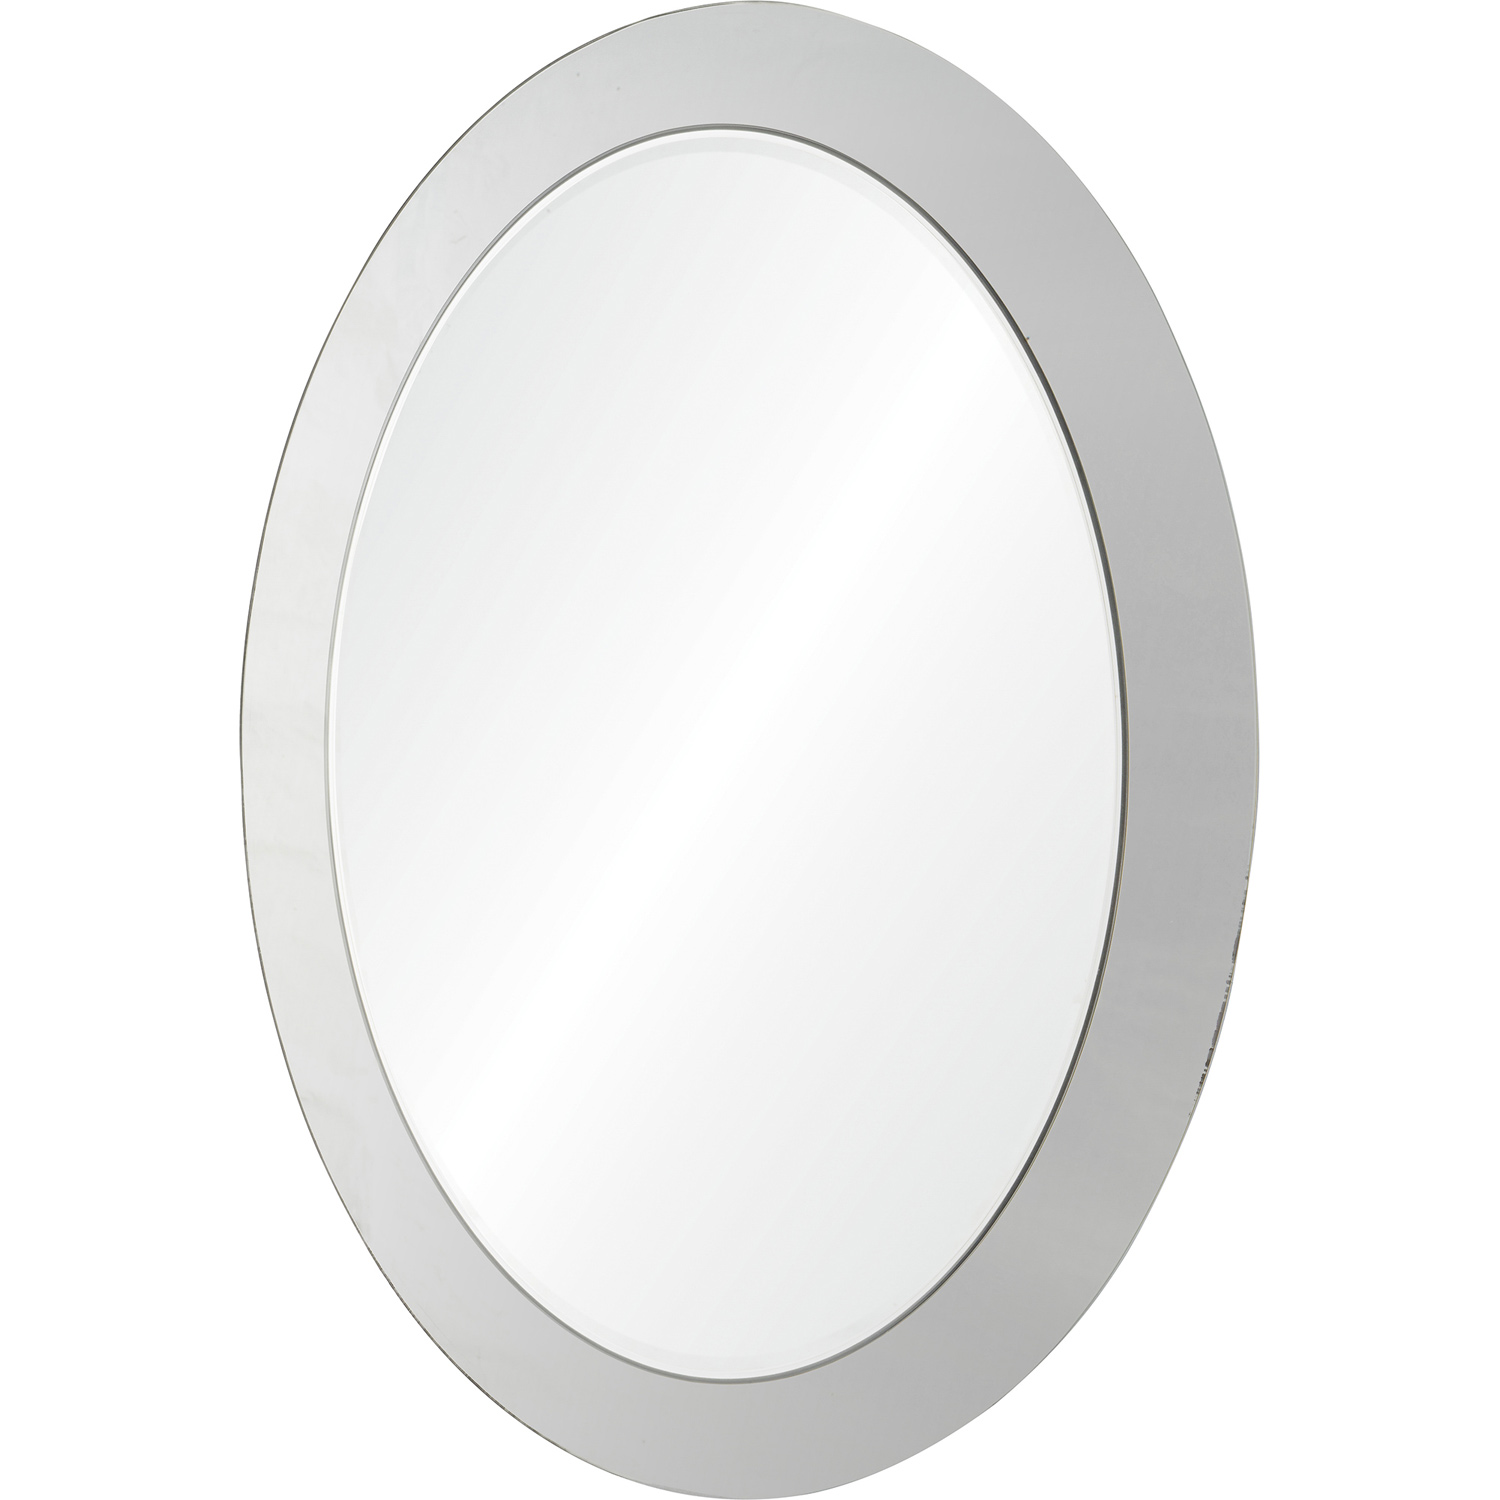 Ren-Wil Ello Oval Mirror - Antique mirror